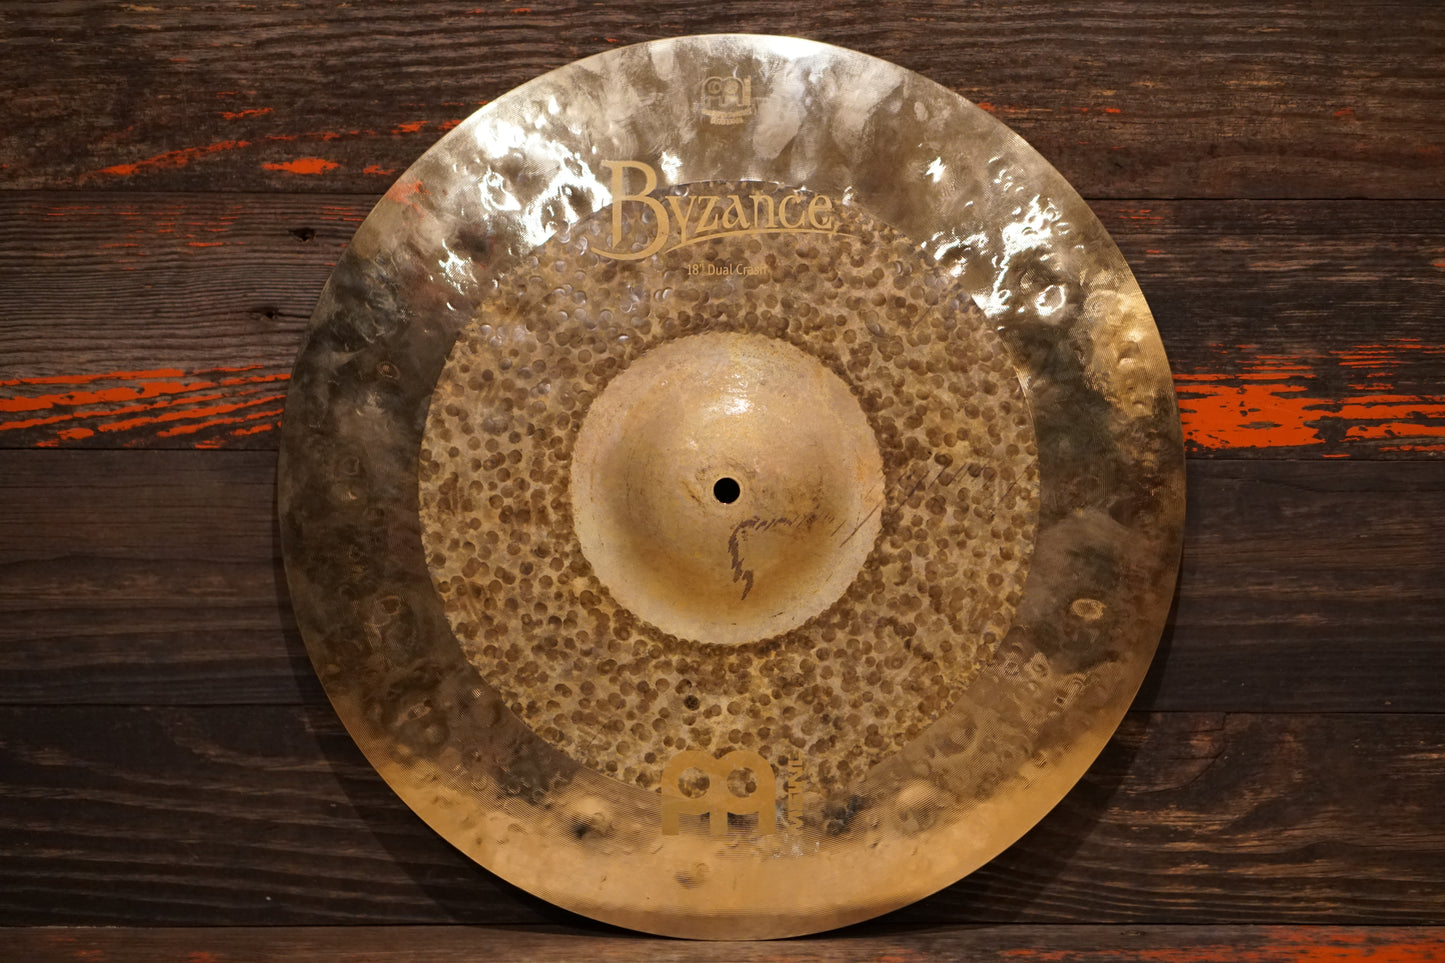 Meinl 18" Byzance Dual Crash Cymbal - 1232g